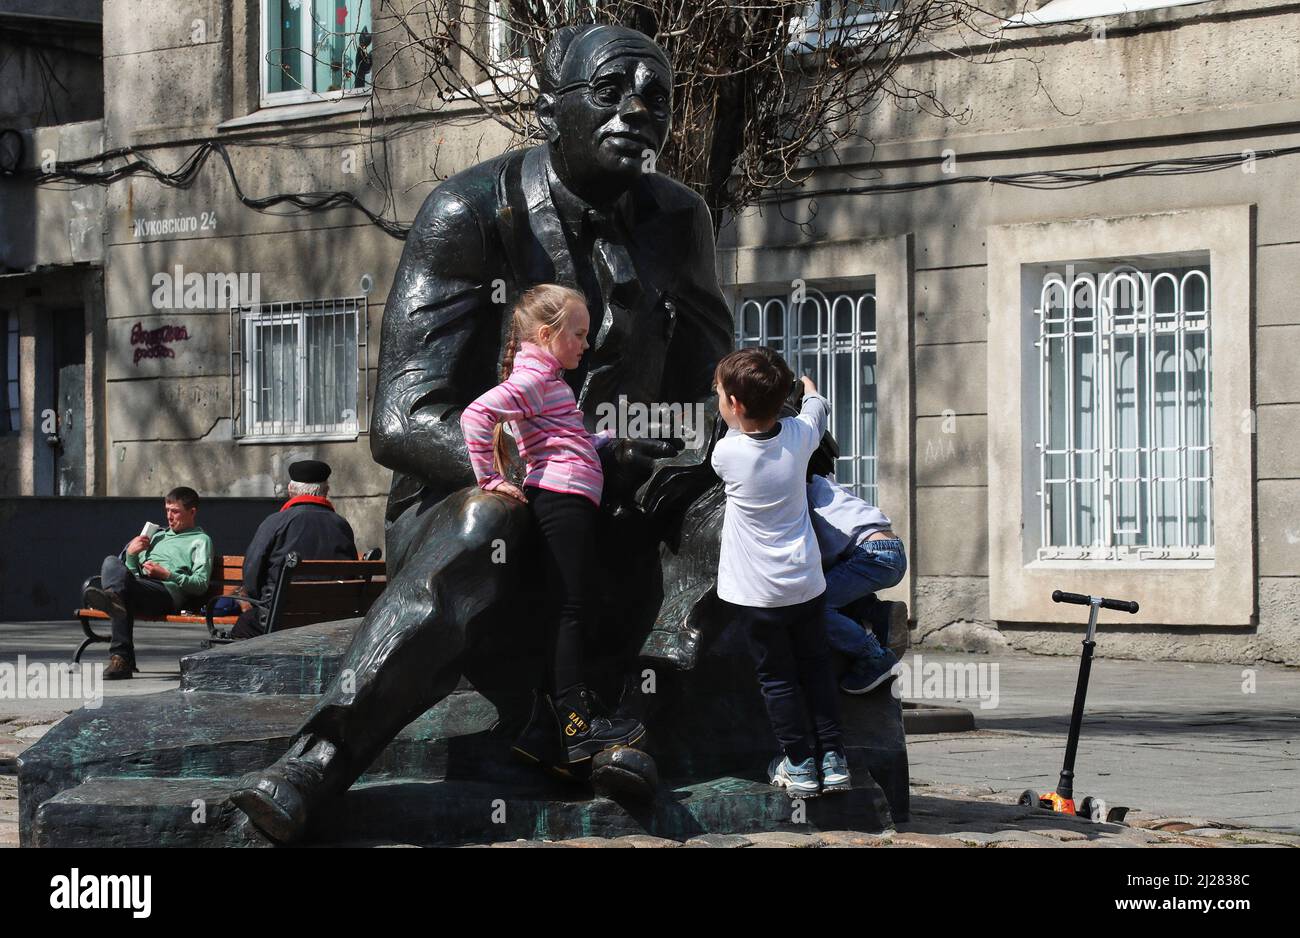 ODESA, UKRAINE - 30. MÄRZ 2022 - zwei Mädchen erkunden das Denkmal des in Odesa geborenen Schriftstellers, Journalisten, Dramatikers und Literaturübersetzers Isaac Babel nea Stockfoto